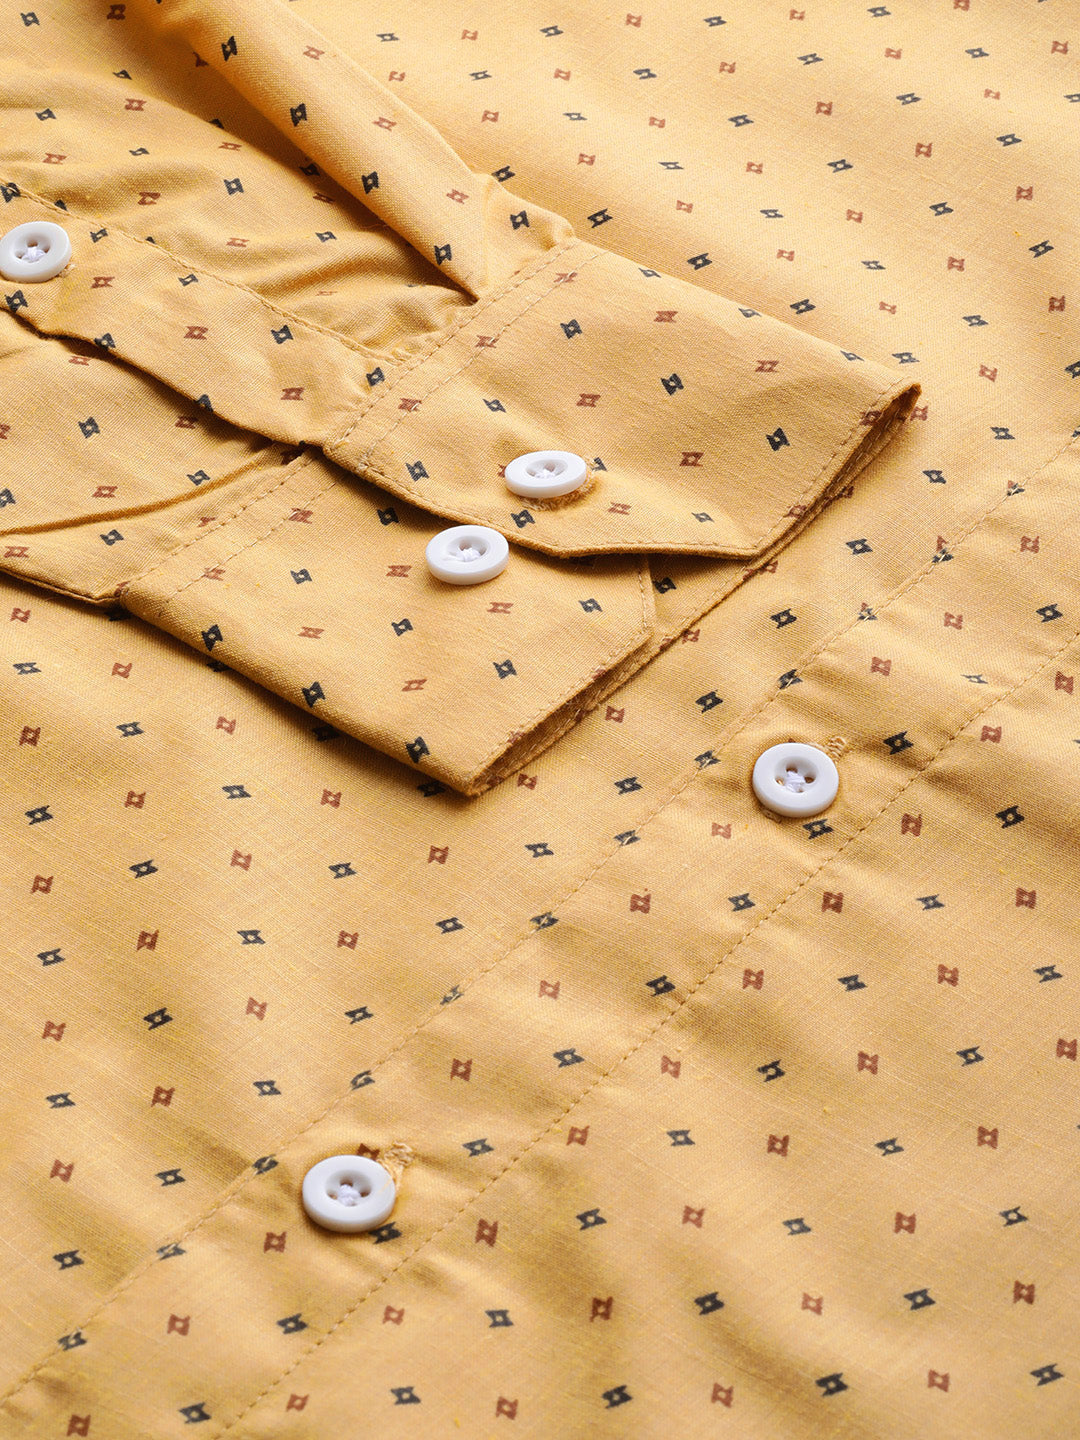 Men's Yellow Cotton Printed Formal Shirts ( SF 716Mustard ) - Jainish